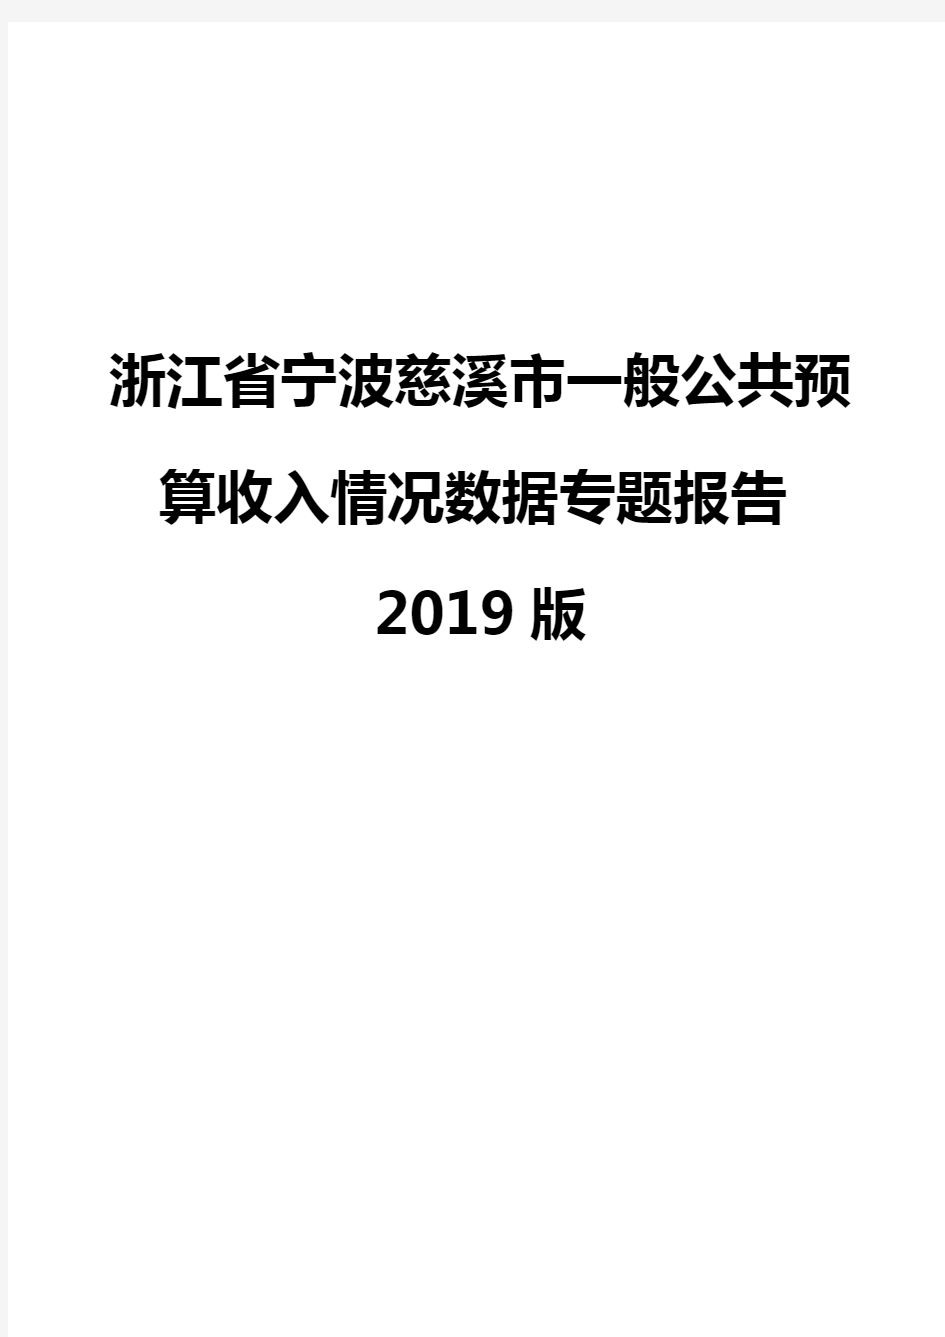 浙江省宁波慈溪市一般公共预算收入情况数据专题报告2019版